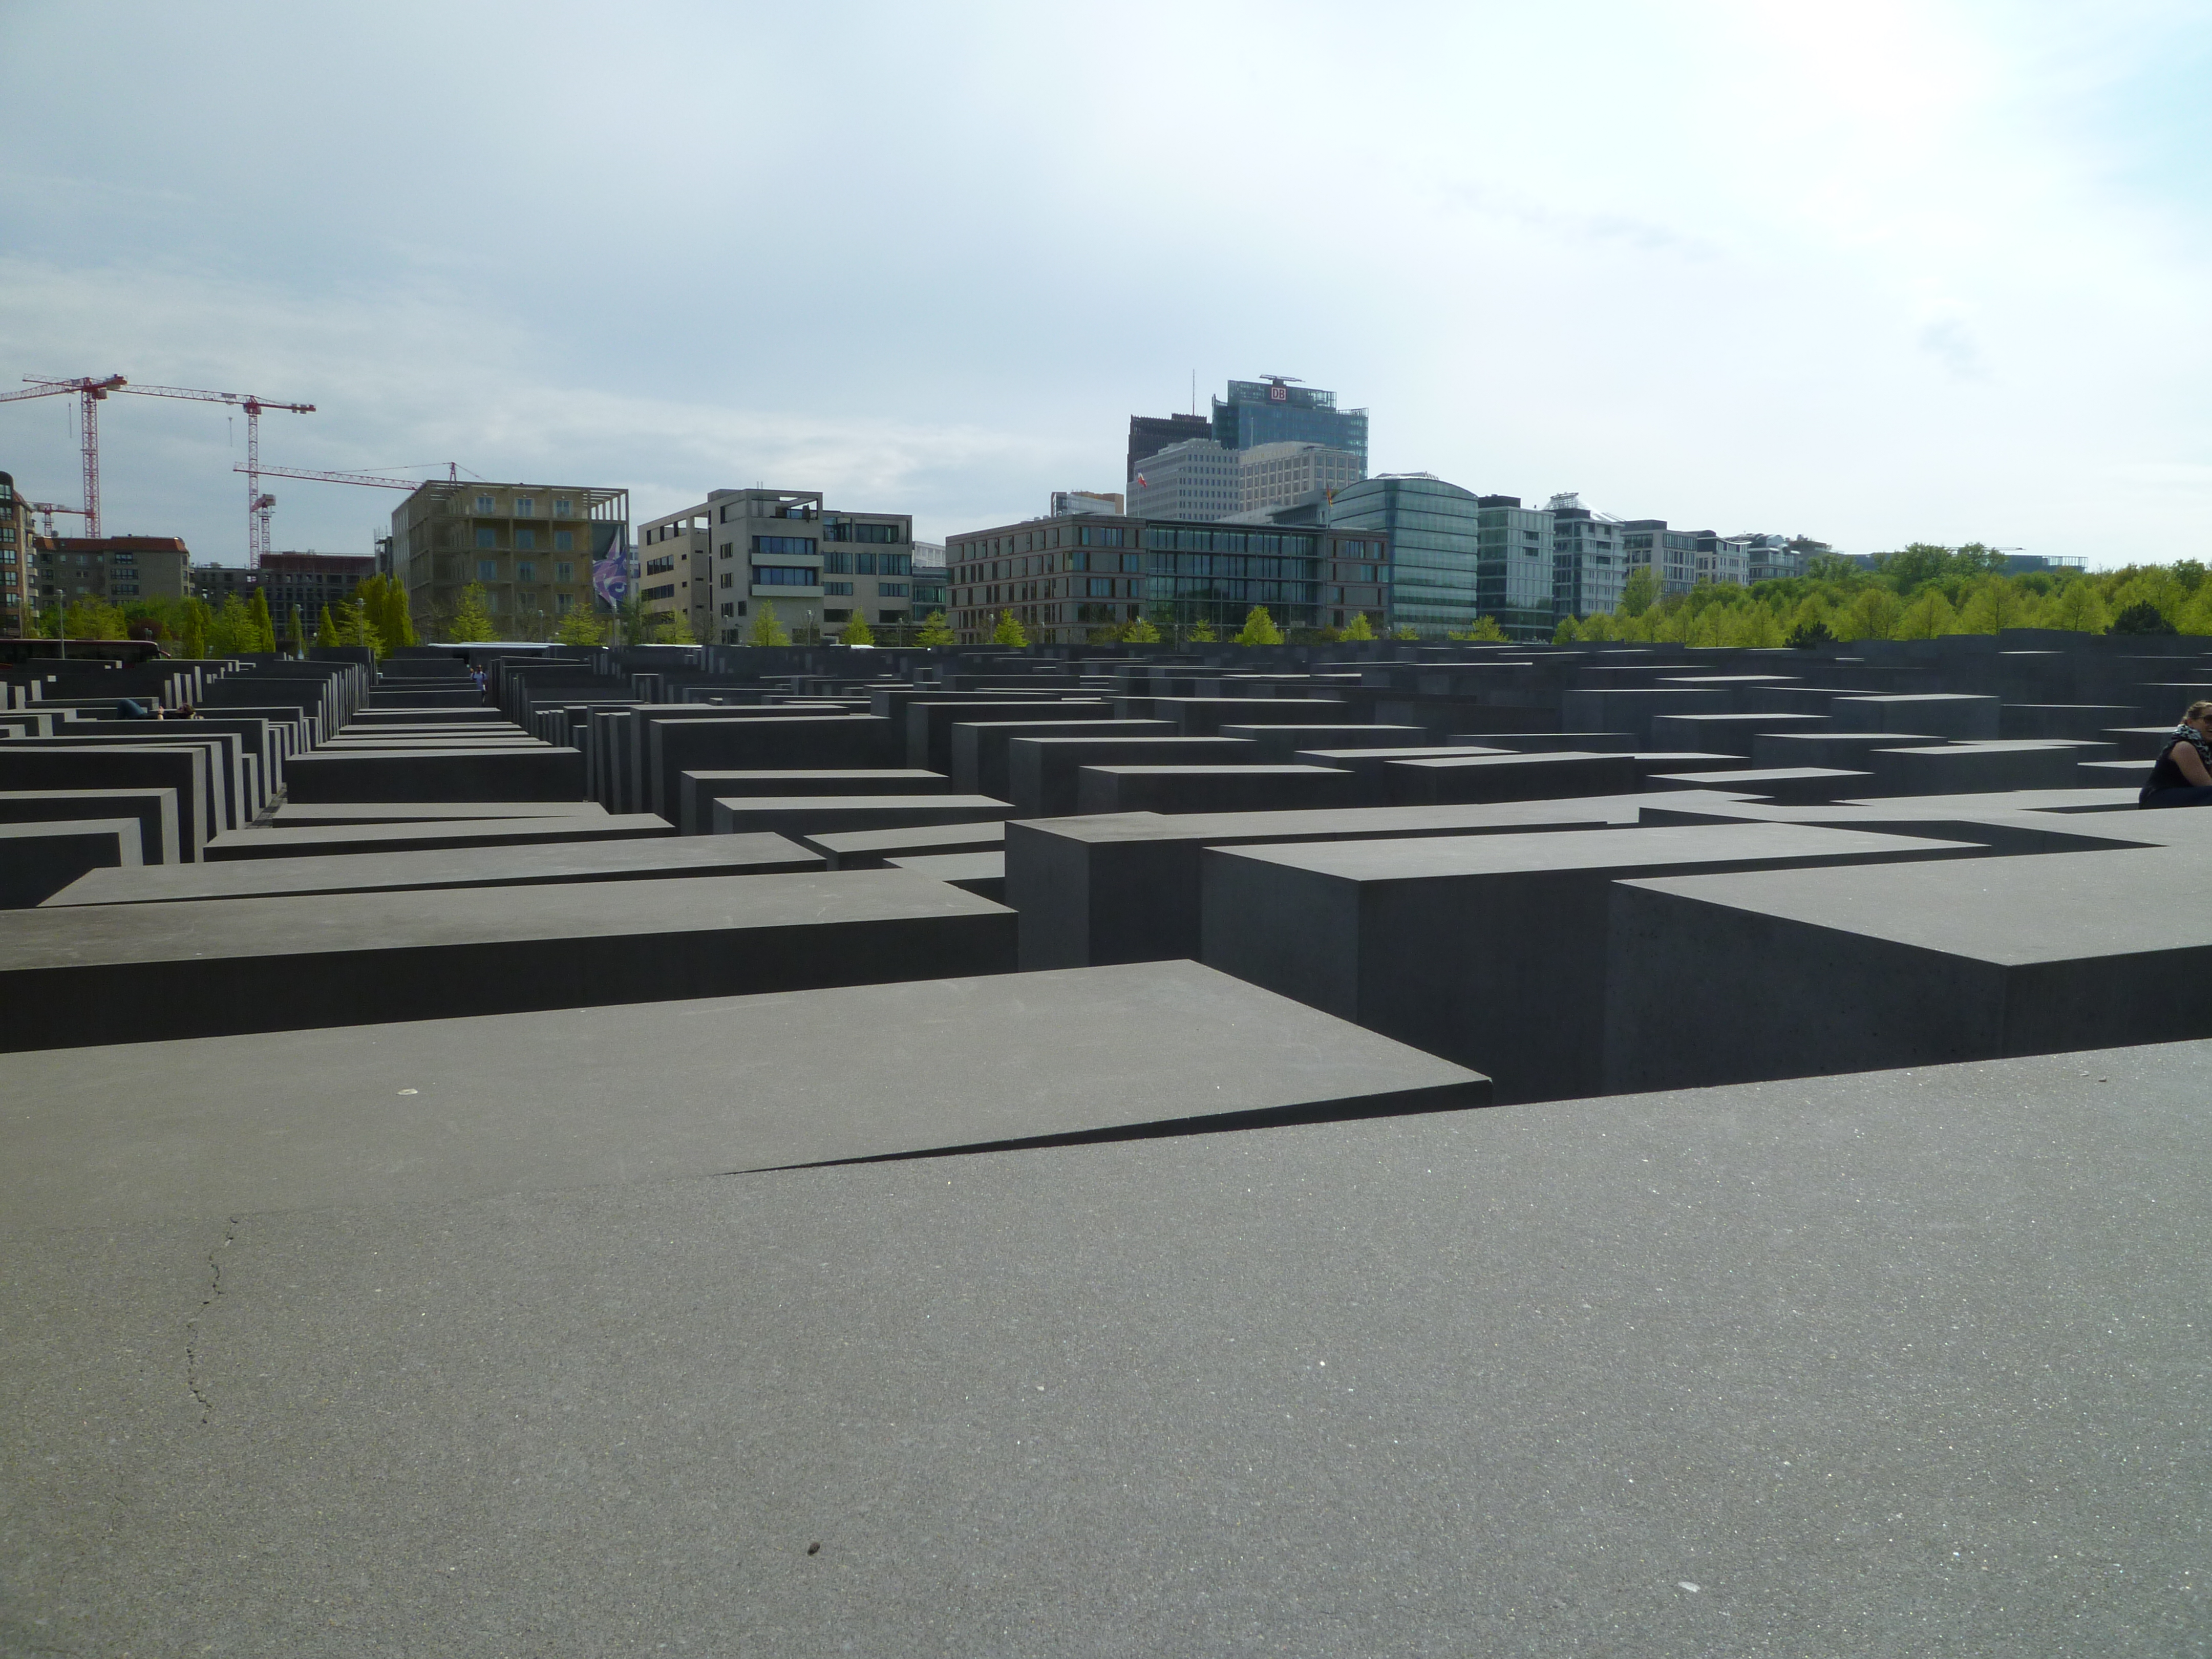 Haulocaust Memorial, Berlin